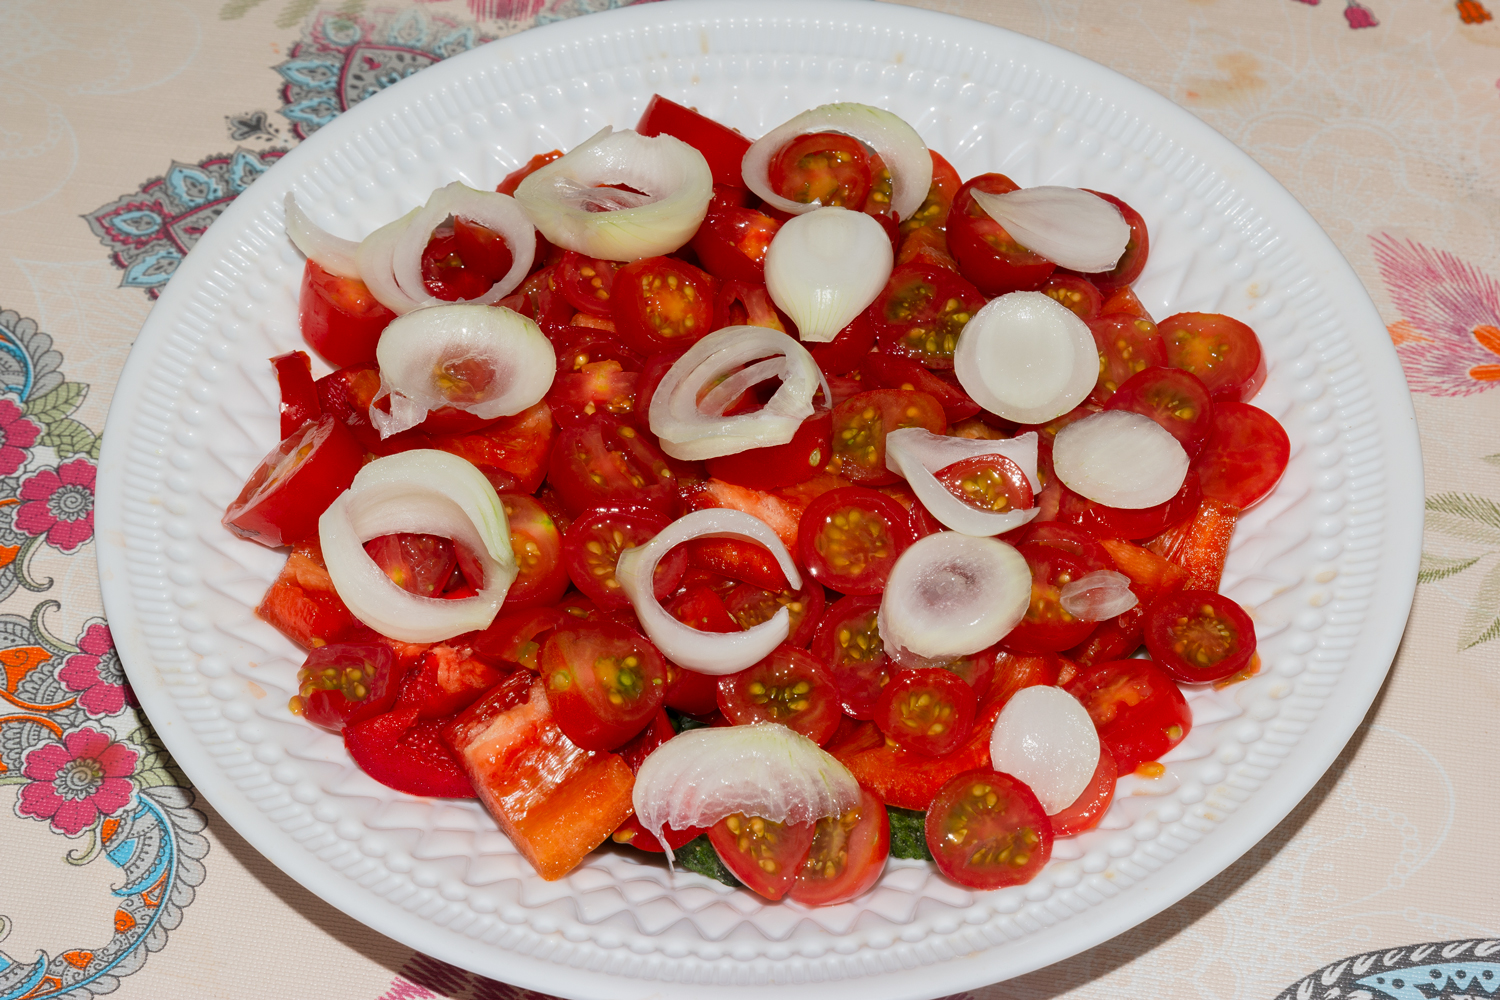 последний слой по рецепту Армянский салат с кинзой 